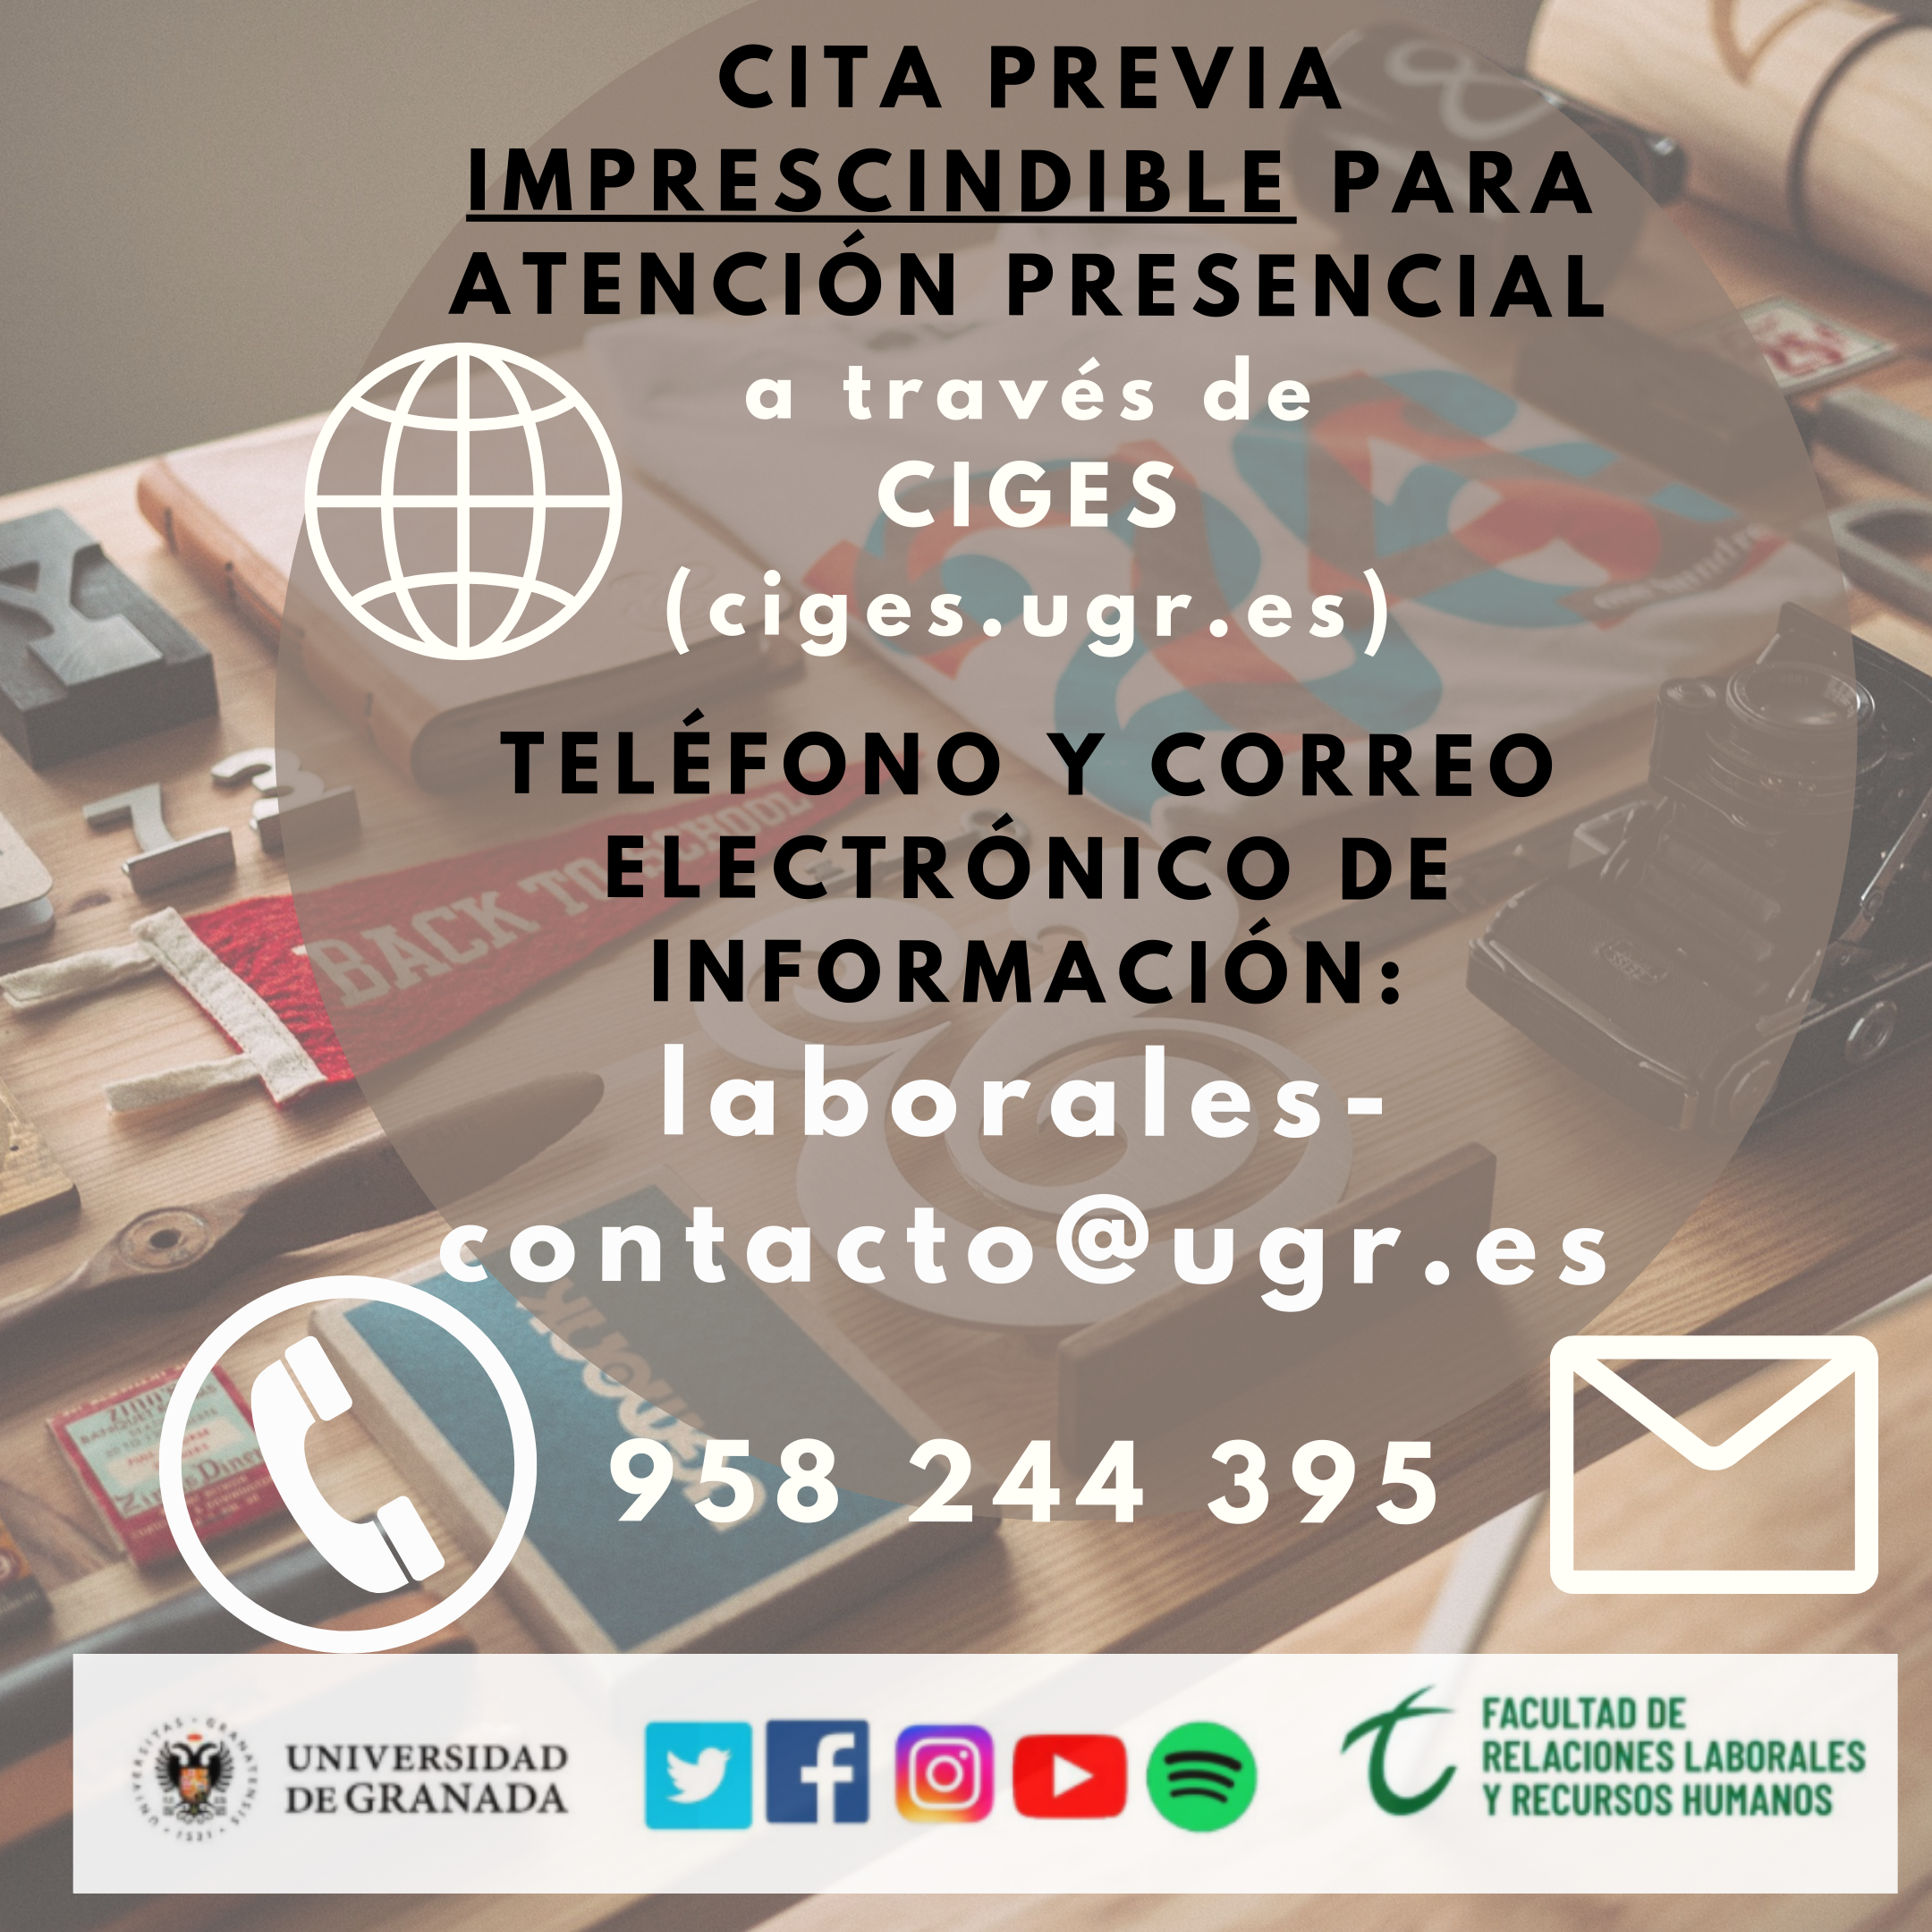 numero de telefono de la secreetaría de la facultad 958244395 y dirección de correo electrónico de la facultad de relaciones laborales laborales-contacto@ugr.es